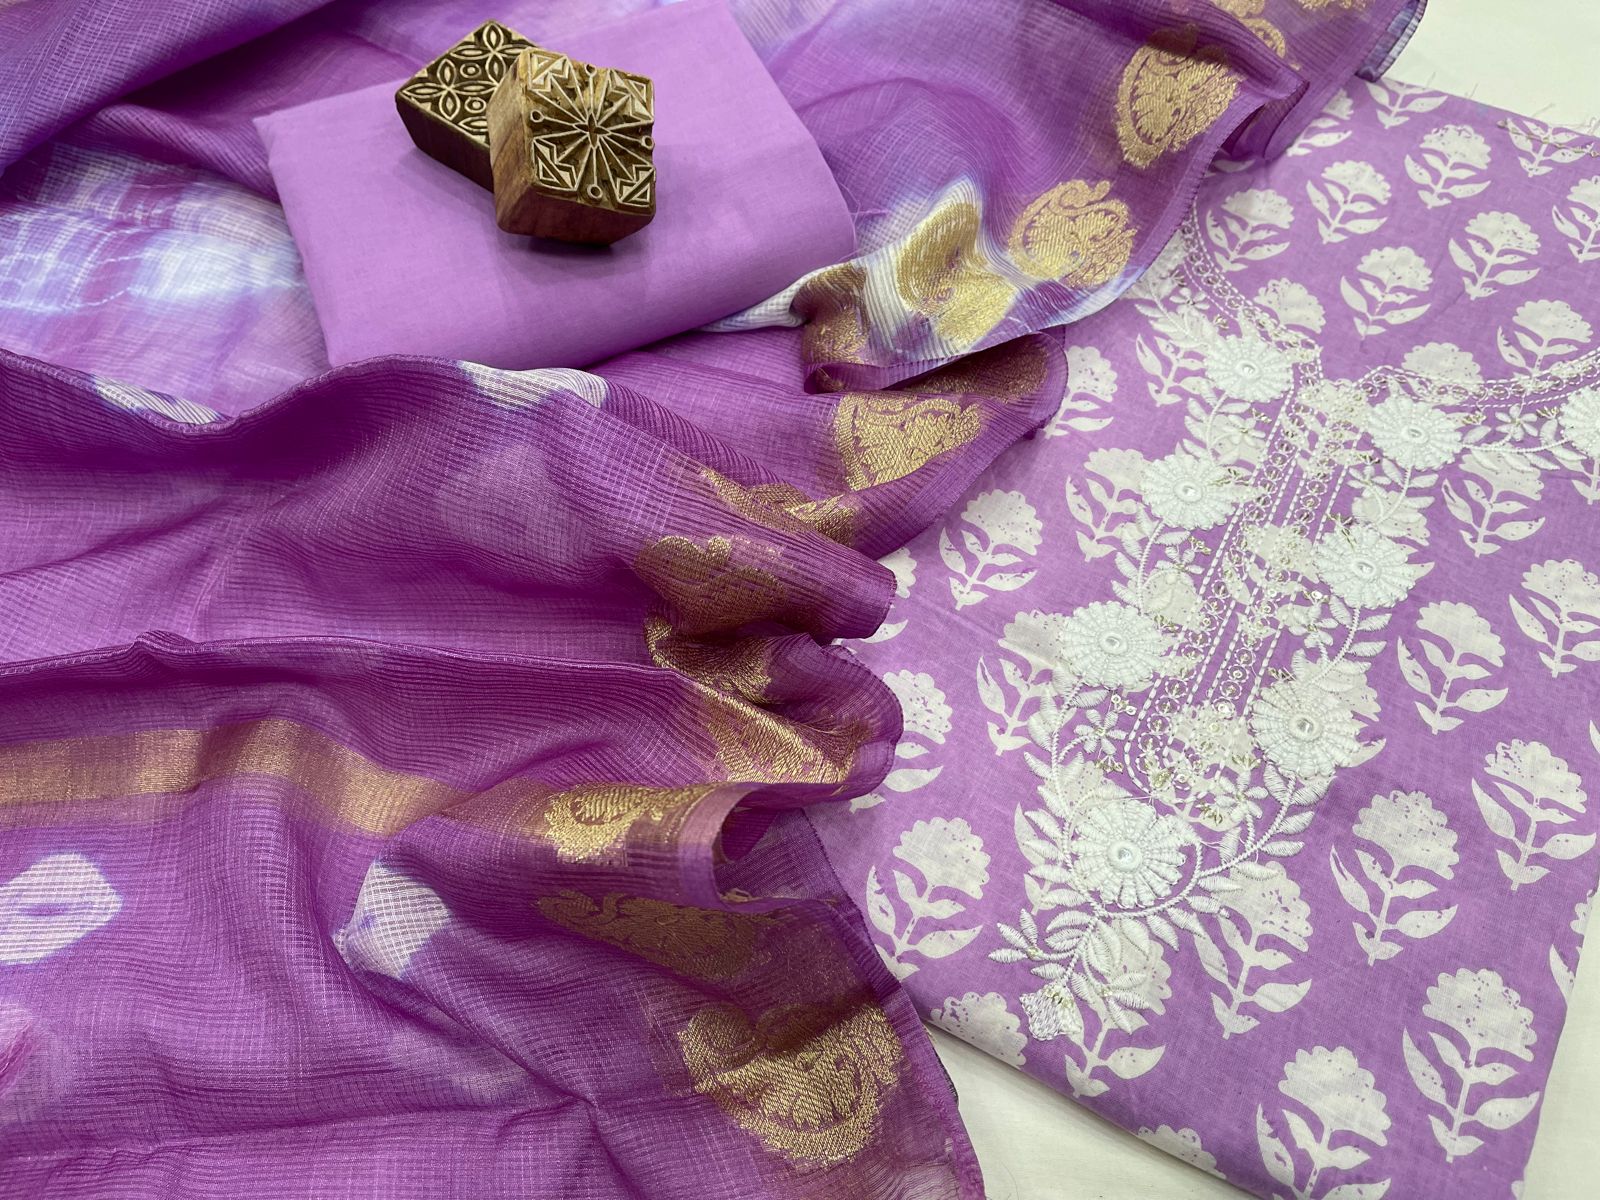 Lavender cotton party wear salwar suit for ladies